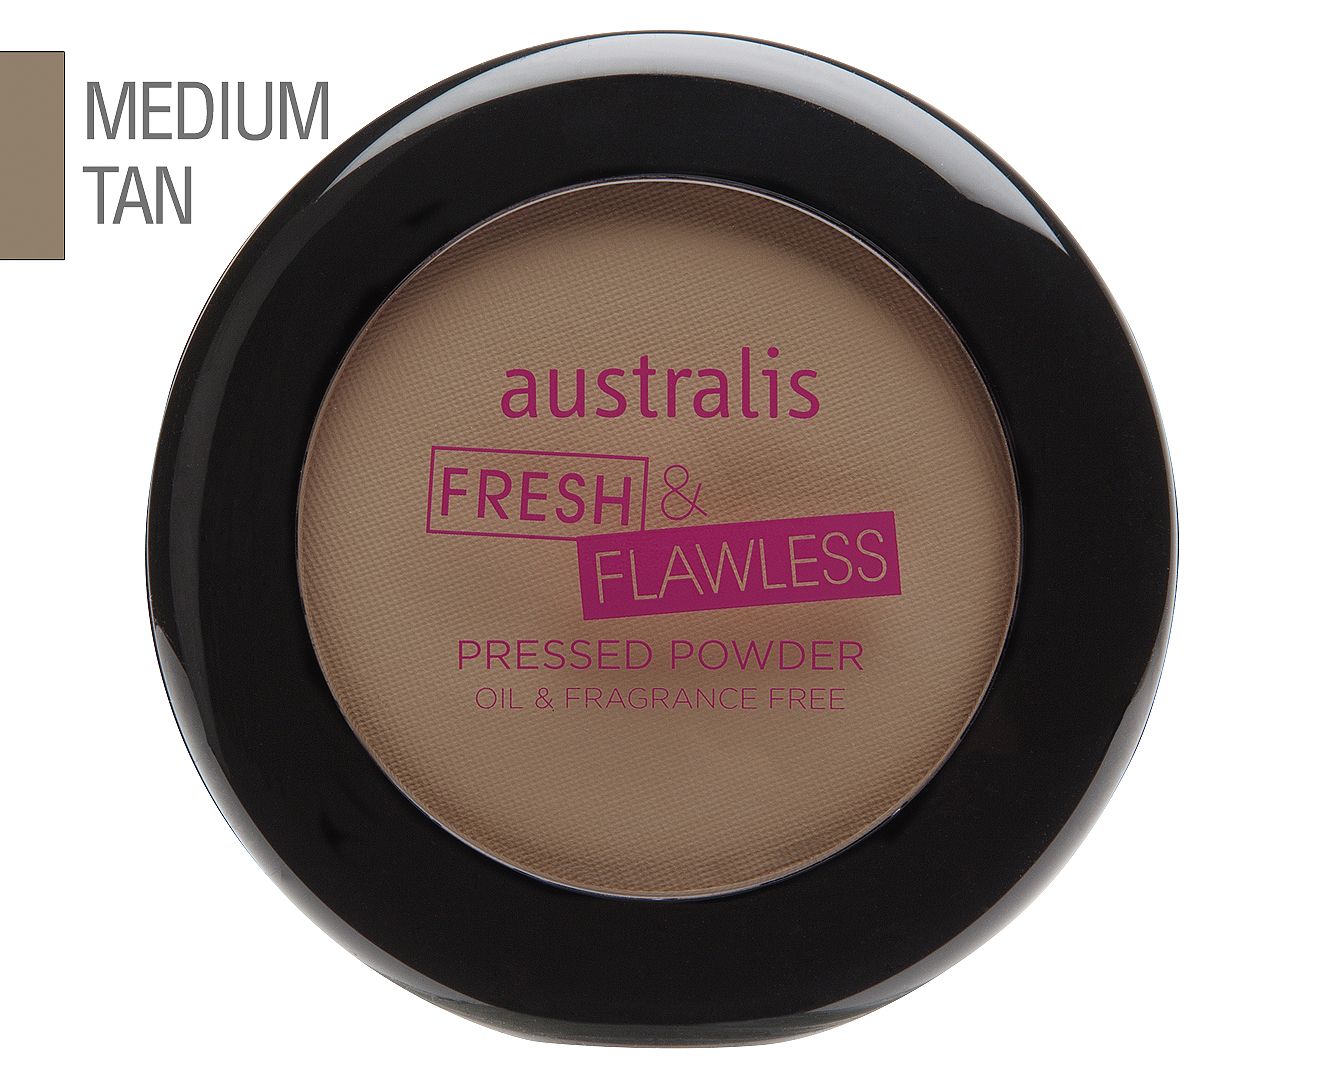 Australis Fresh & Flawless Pressed Powder 12g - Medium Tan | Catch.com.au